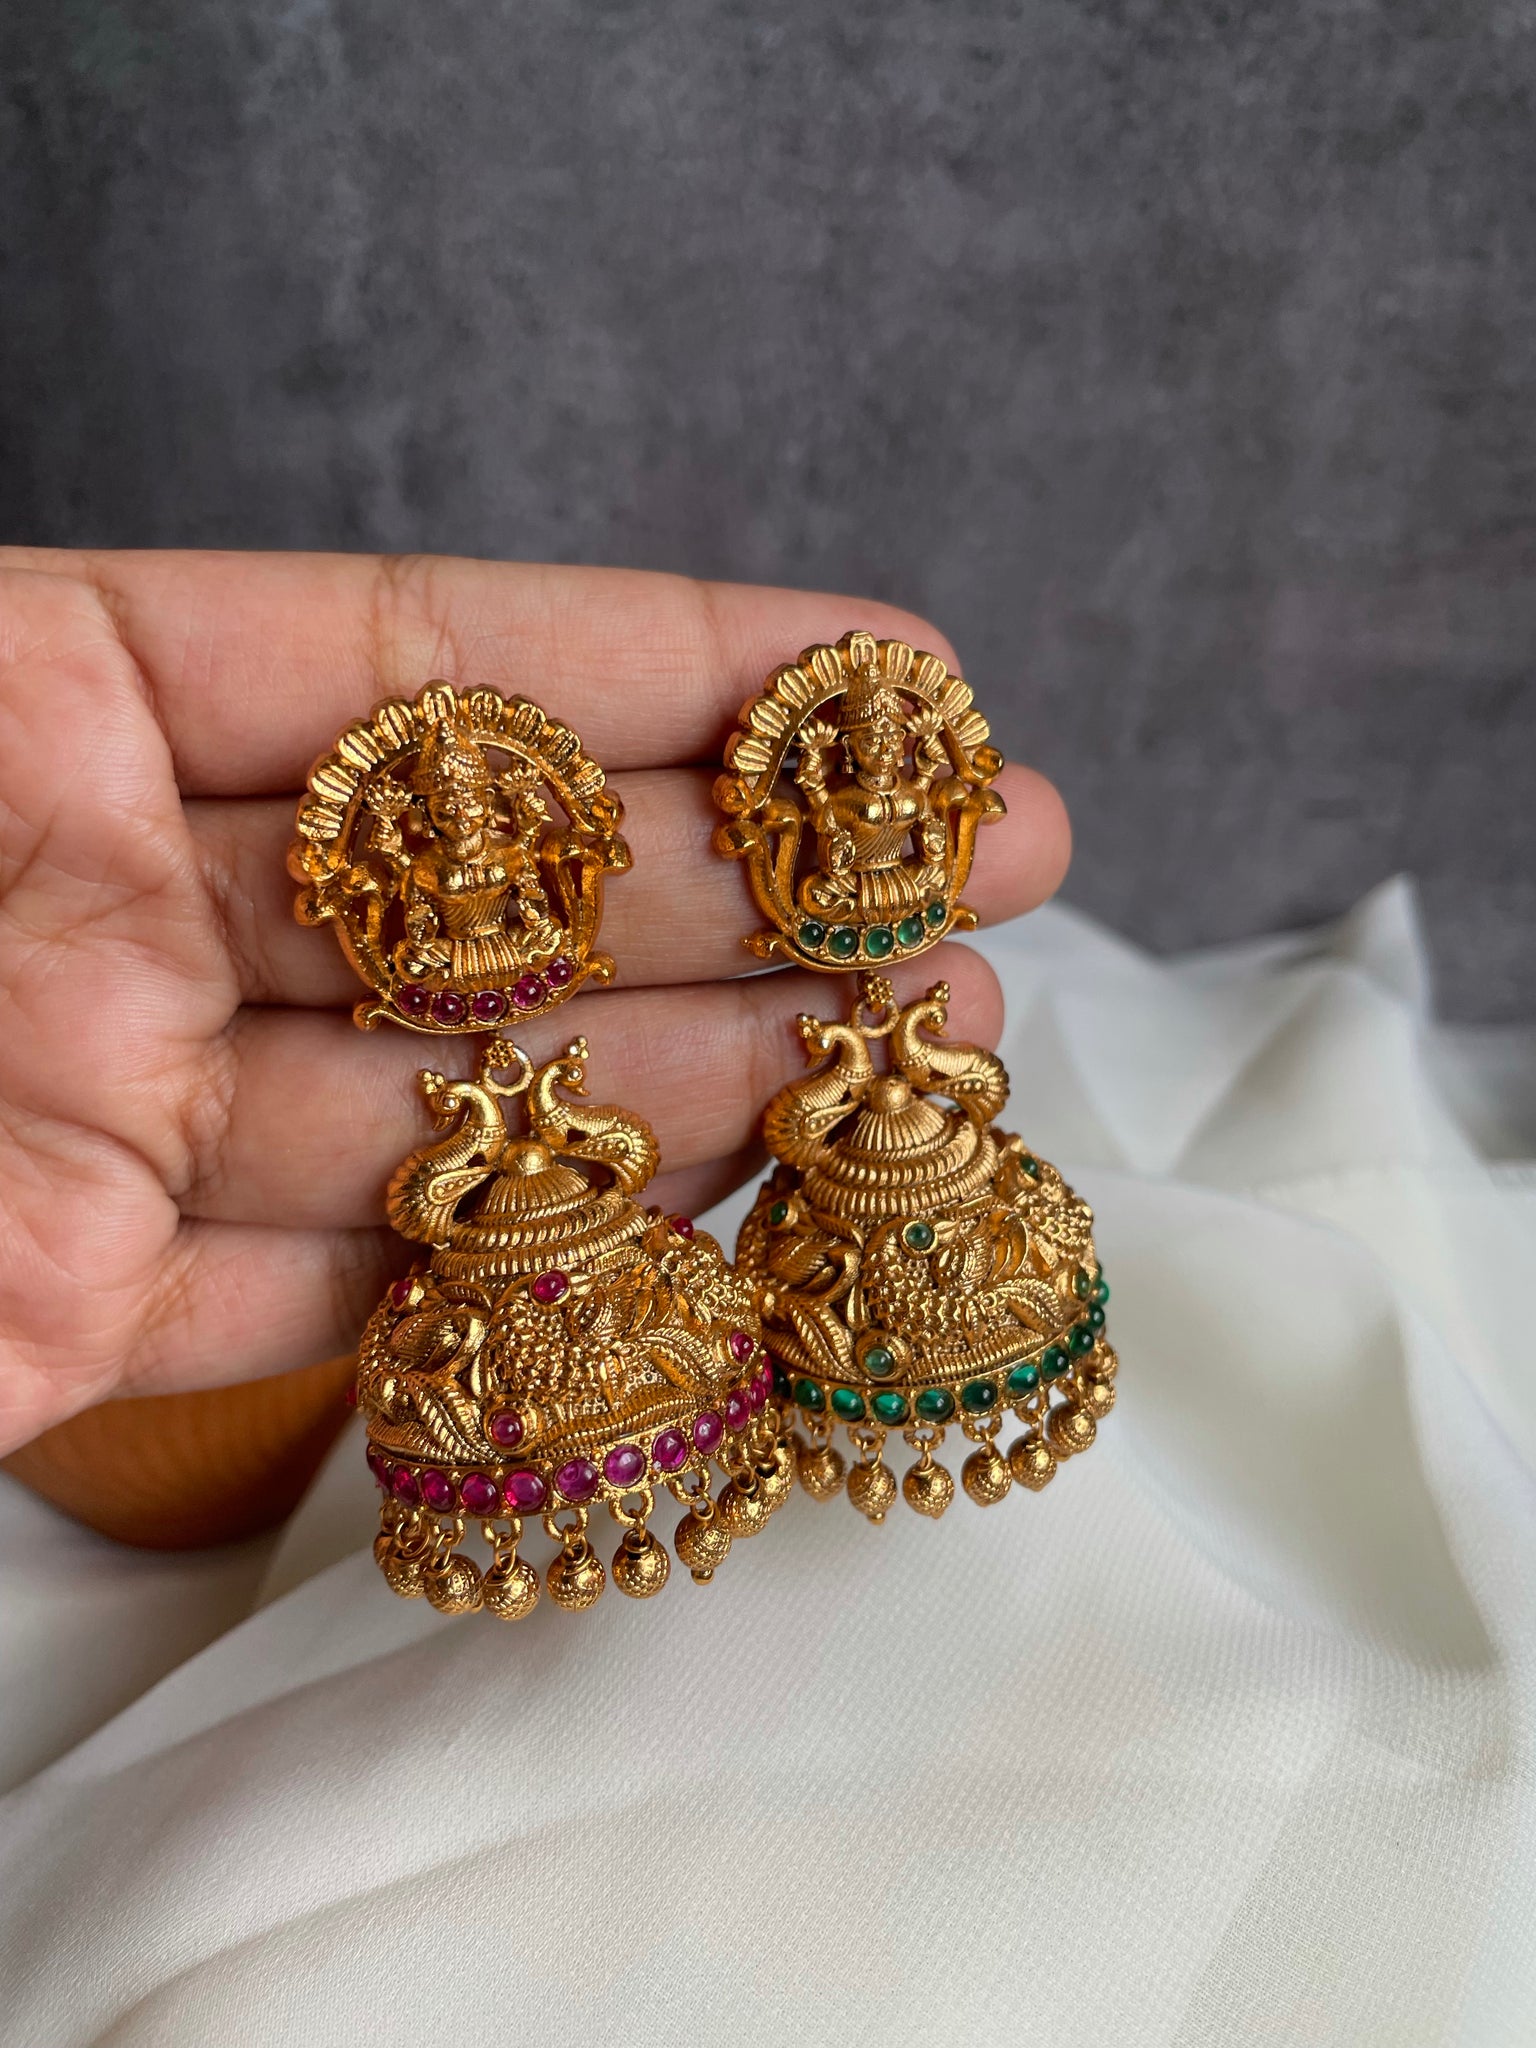 Lakshmi Temple Work Gold Plated Jhumka - Glitterati by Alankriti - 2709901